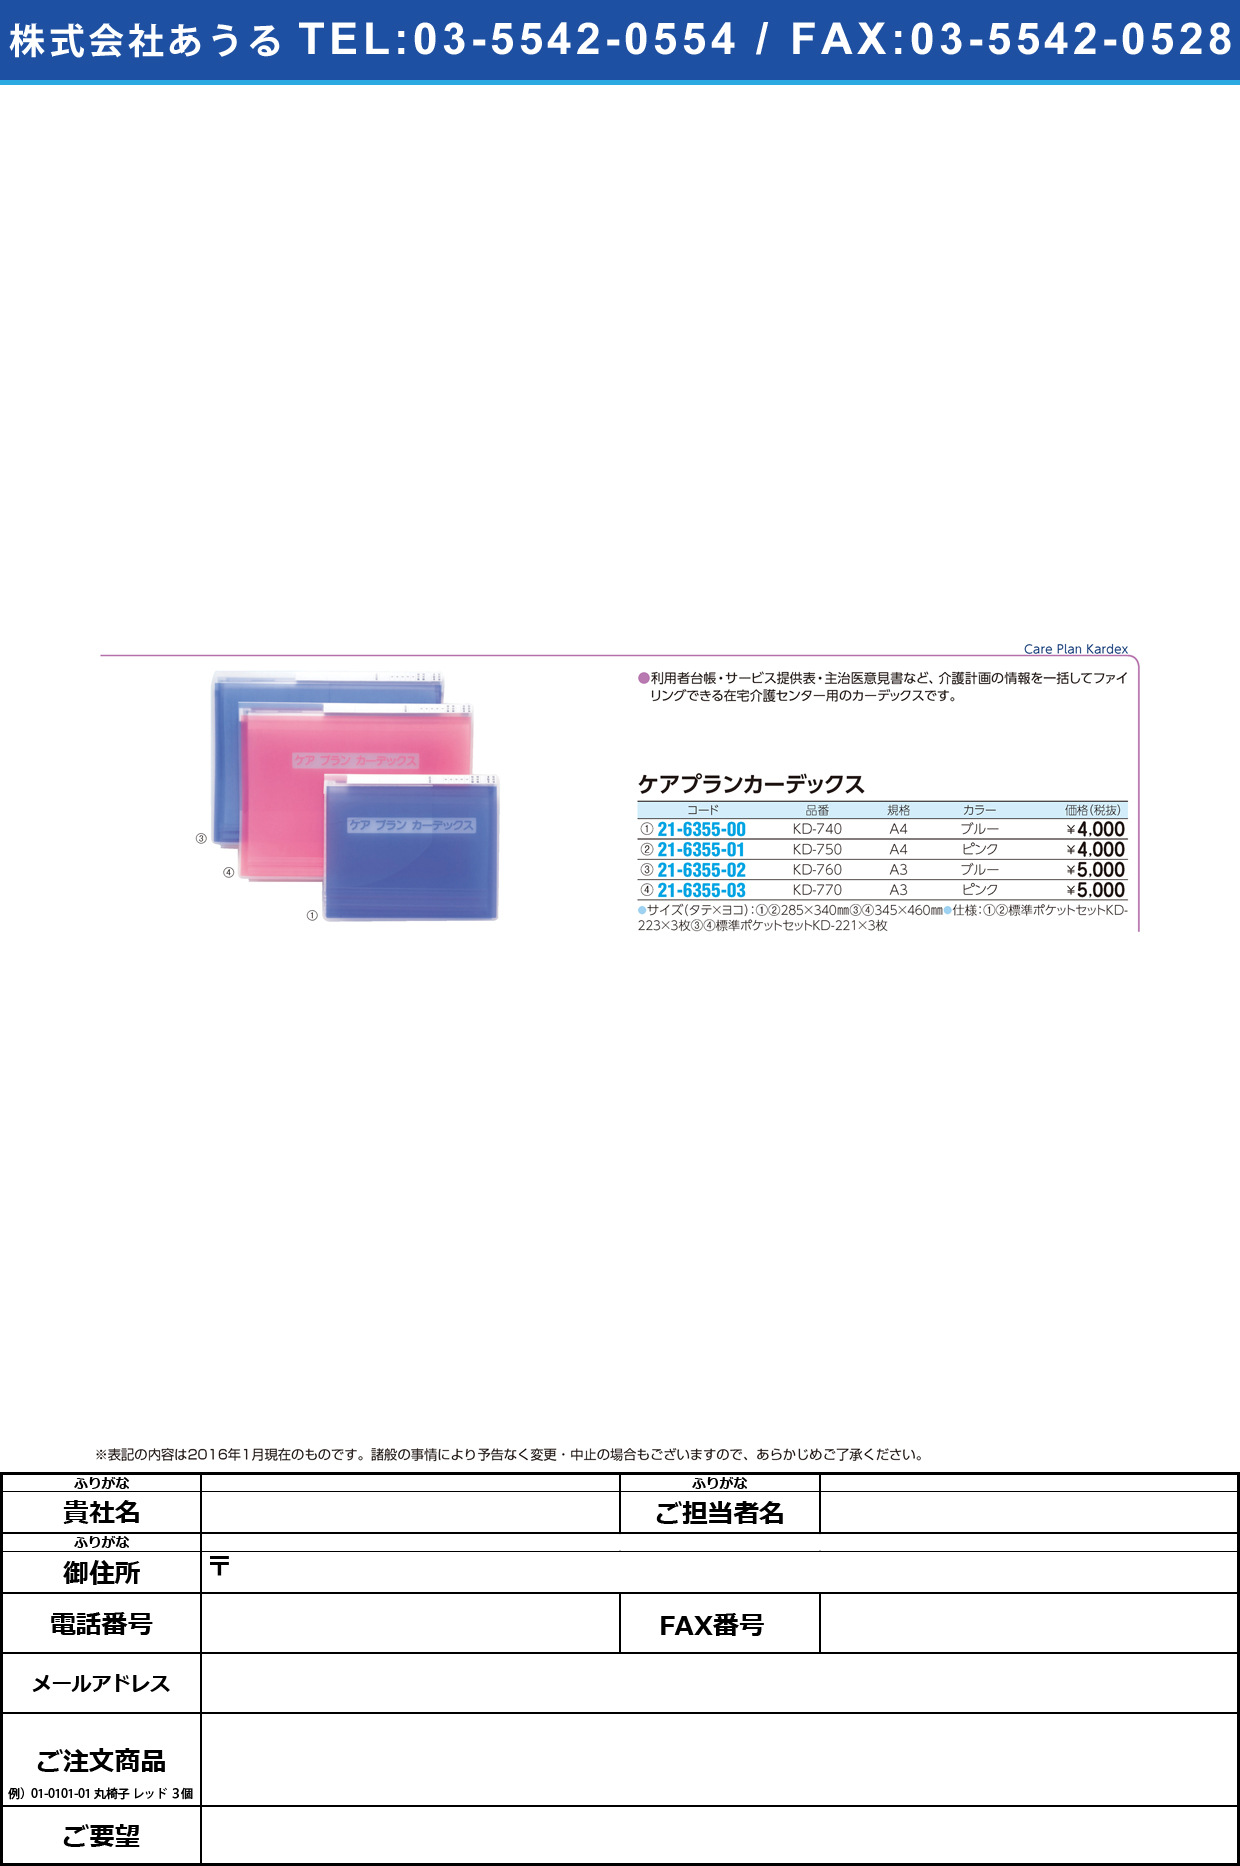 (21-6355-02)ケアプランカーデックス ｹｱﾌﾟﾗﾝｶｰﾃﾞｯｸｽ KD-760(A3)ﾌﾞﾙｰ【1冊単位】【2016年カタログ商品】